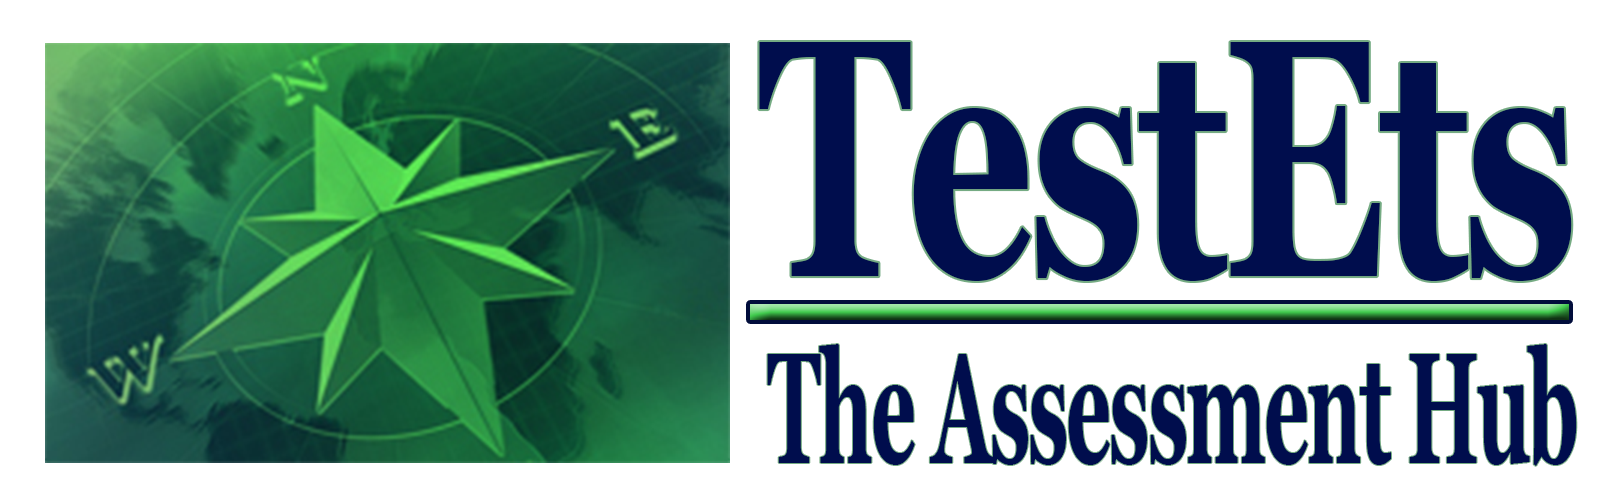 TestEts Career Tests Logo